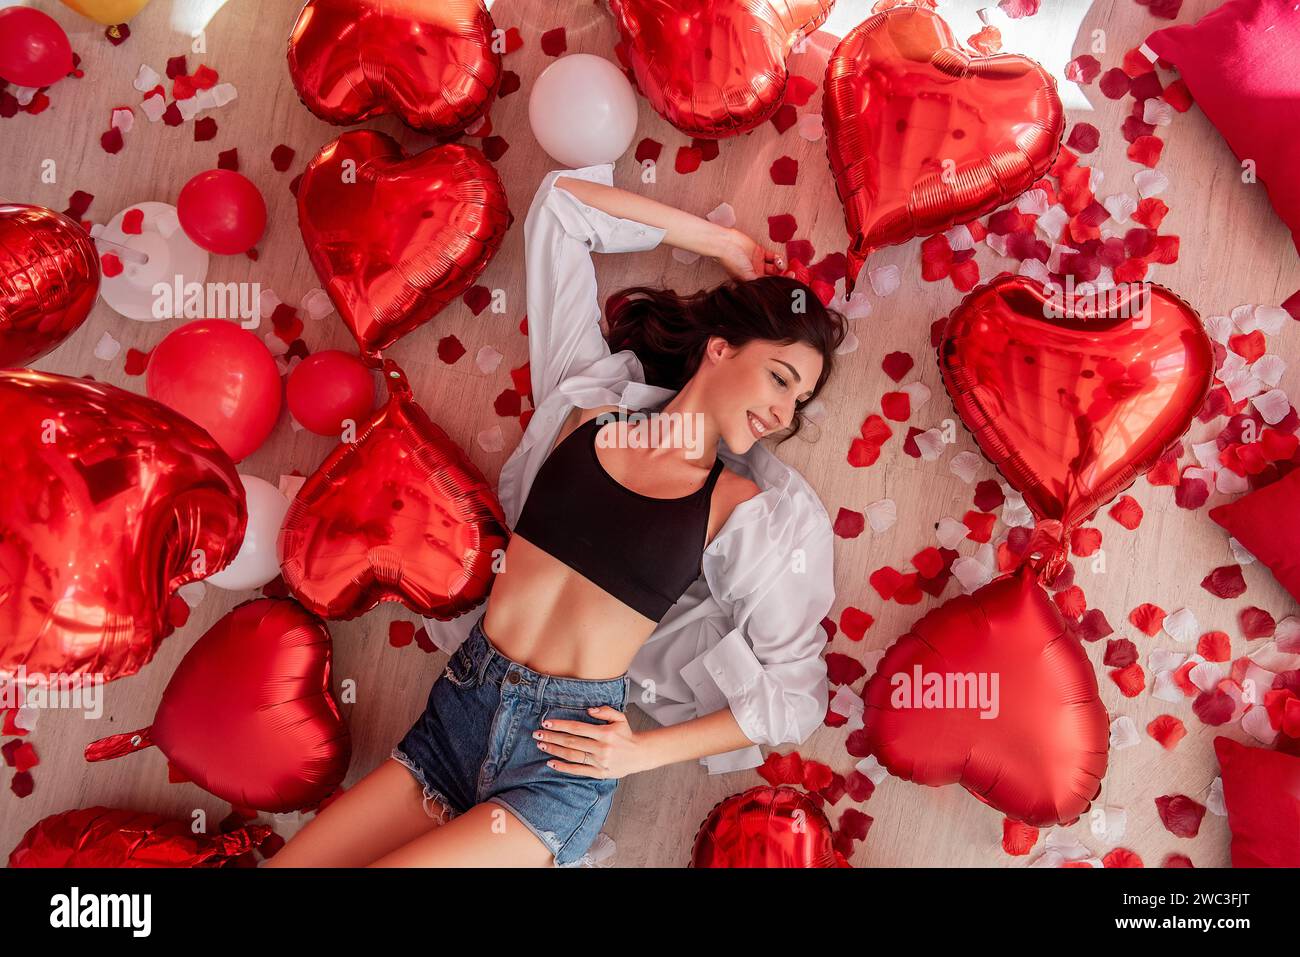 Blick von oben auf die junge Frau, die am Valentinstag auf Holzboden liegt und von roten Herzballons umgeben ist. Das Mädchen lächelt und trägt ein lässiges Outfit. Boden Stockfoto